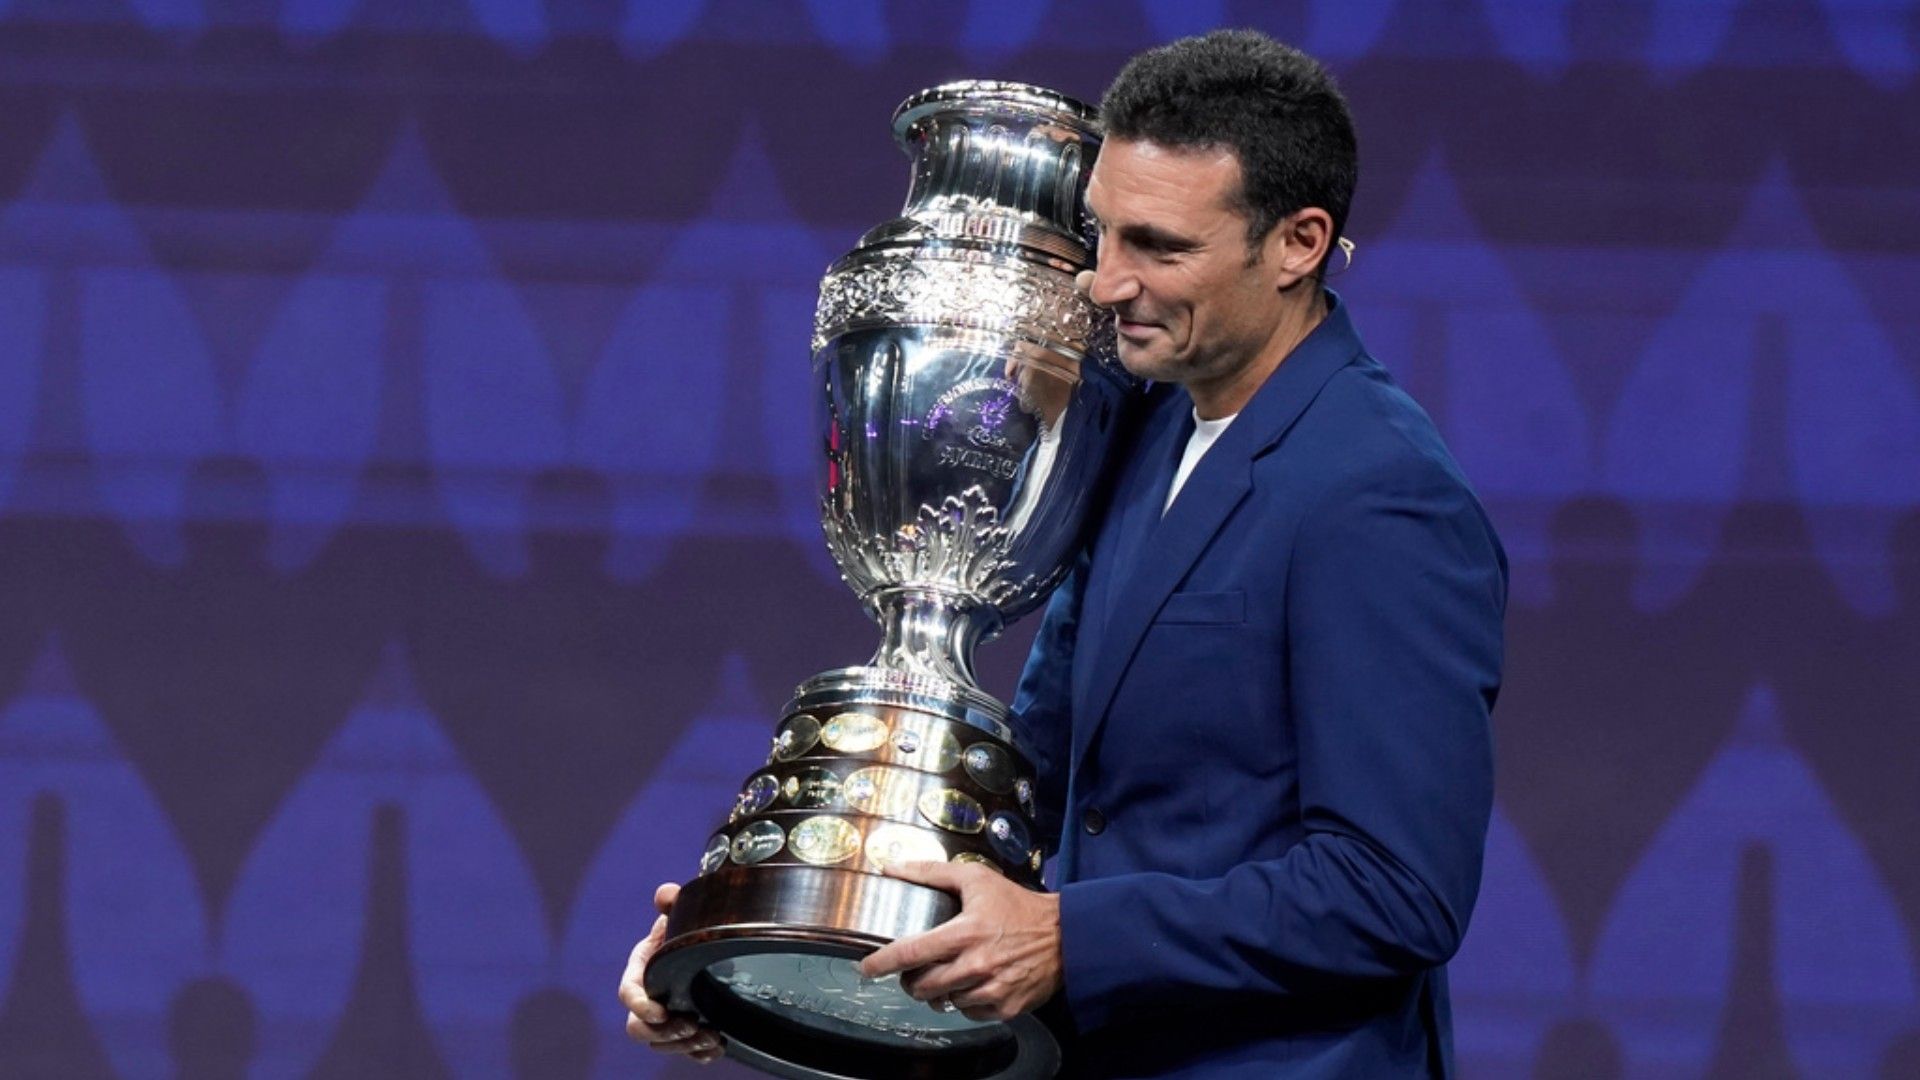 El entrenador de Argentina Lionel Scaloni presentó el trofeo de la Copa América durante el sorte. Foto: AP